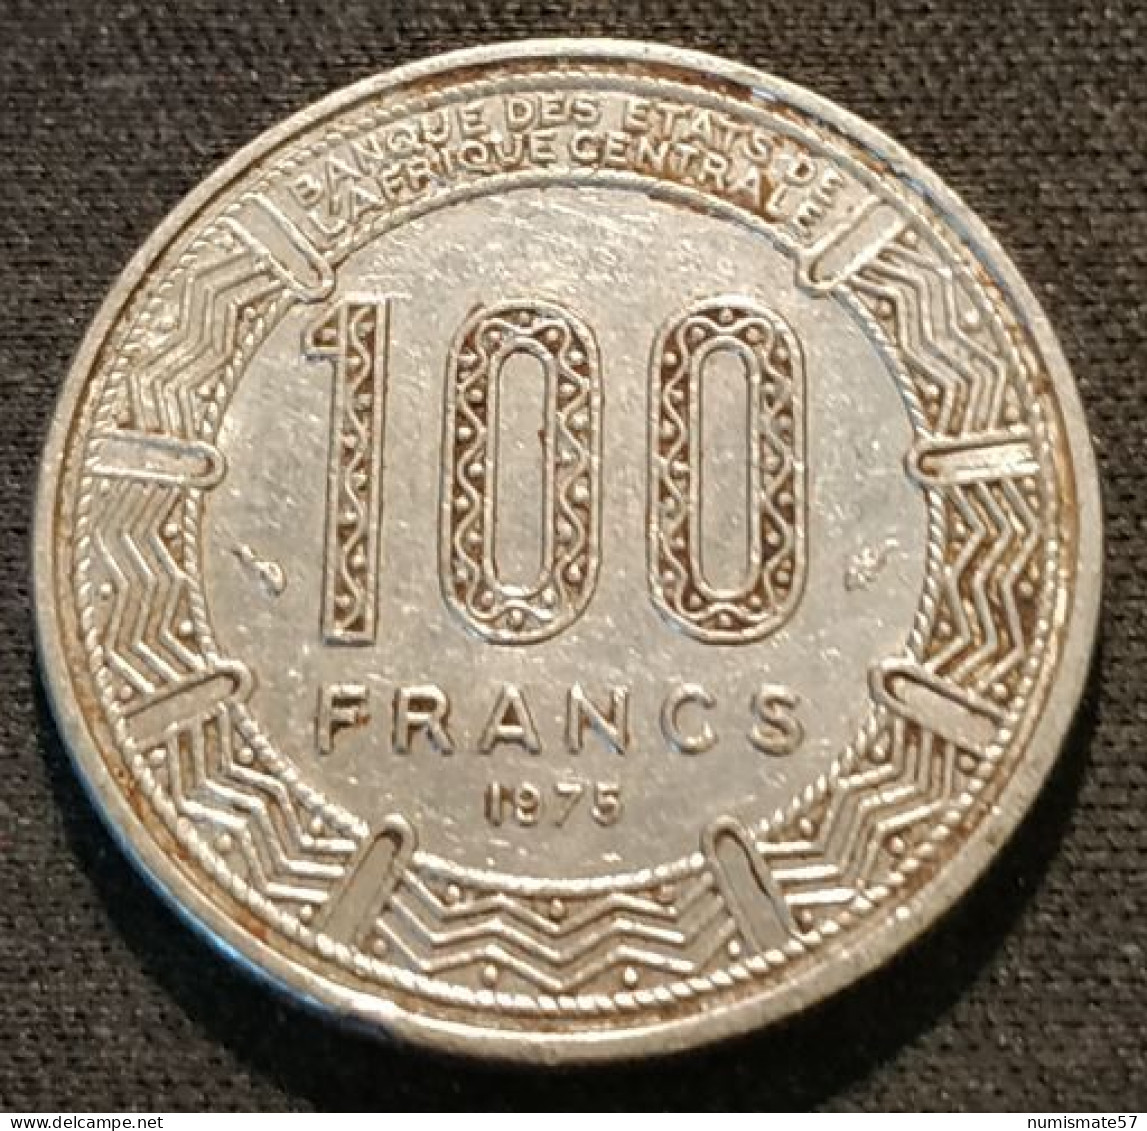 CAMEROUN - 100 FRANCS 1975 - KM 17 - Cameroun